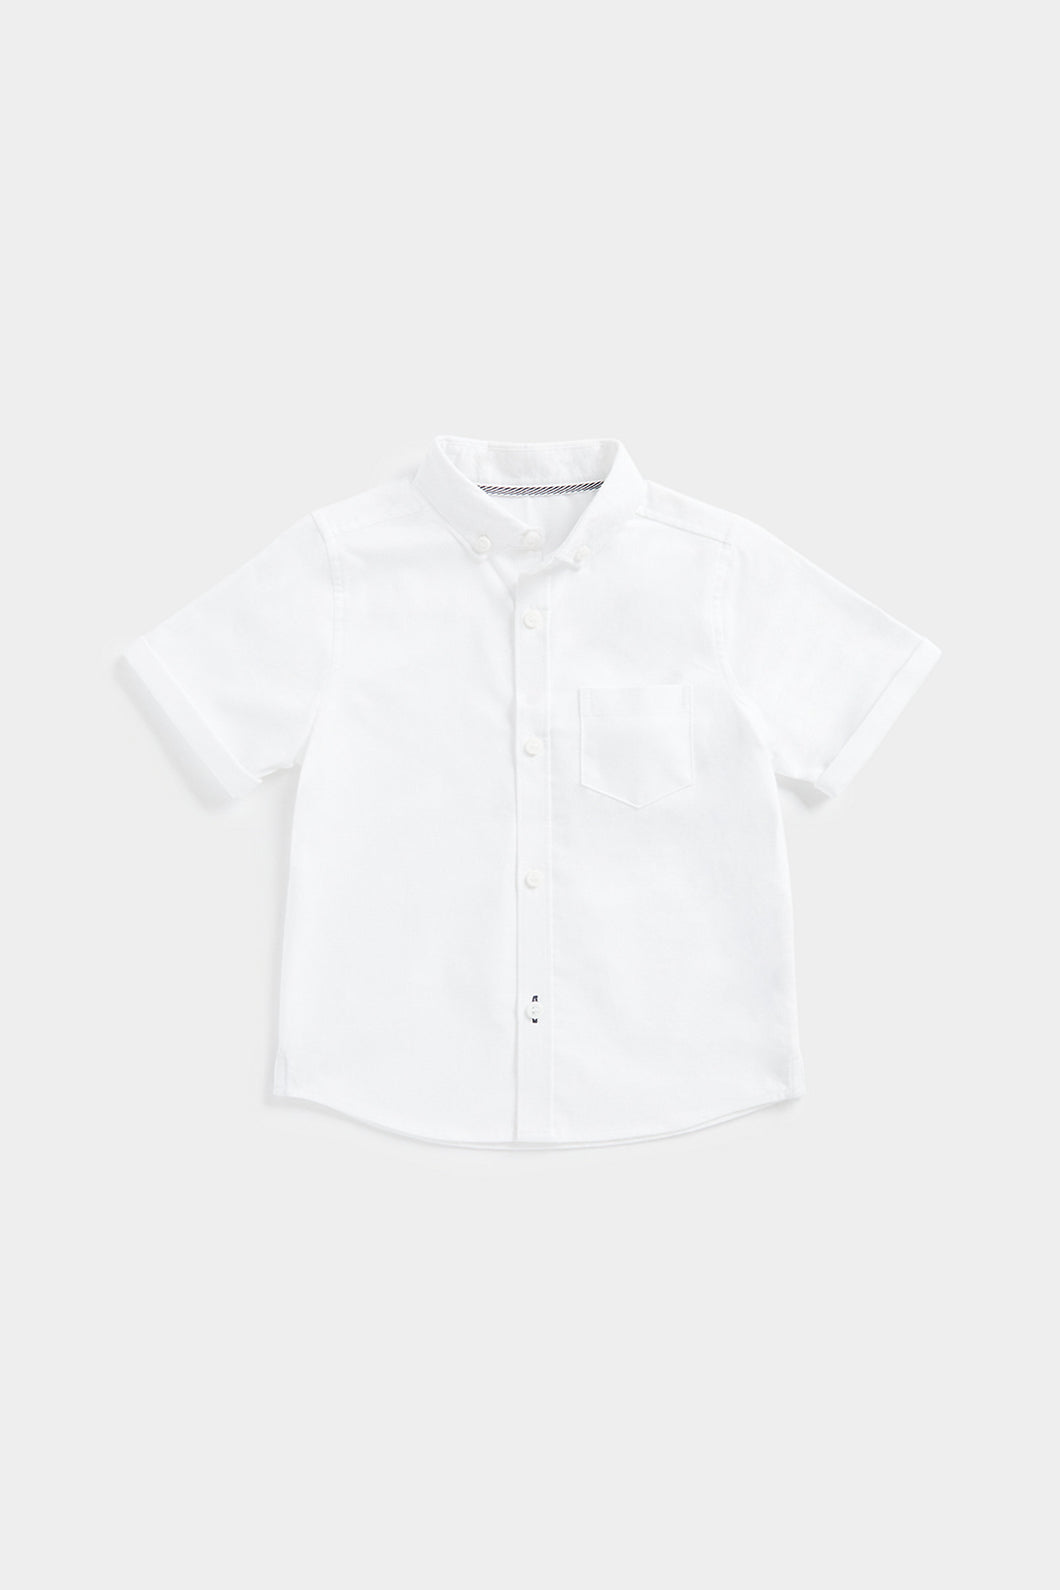 Mothercare White Short-Sleeved Shirt